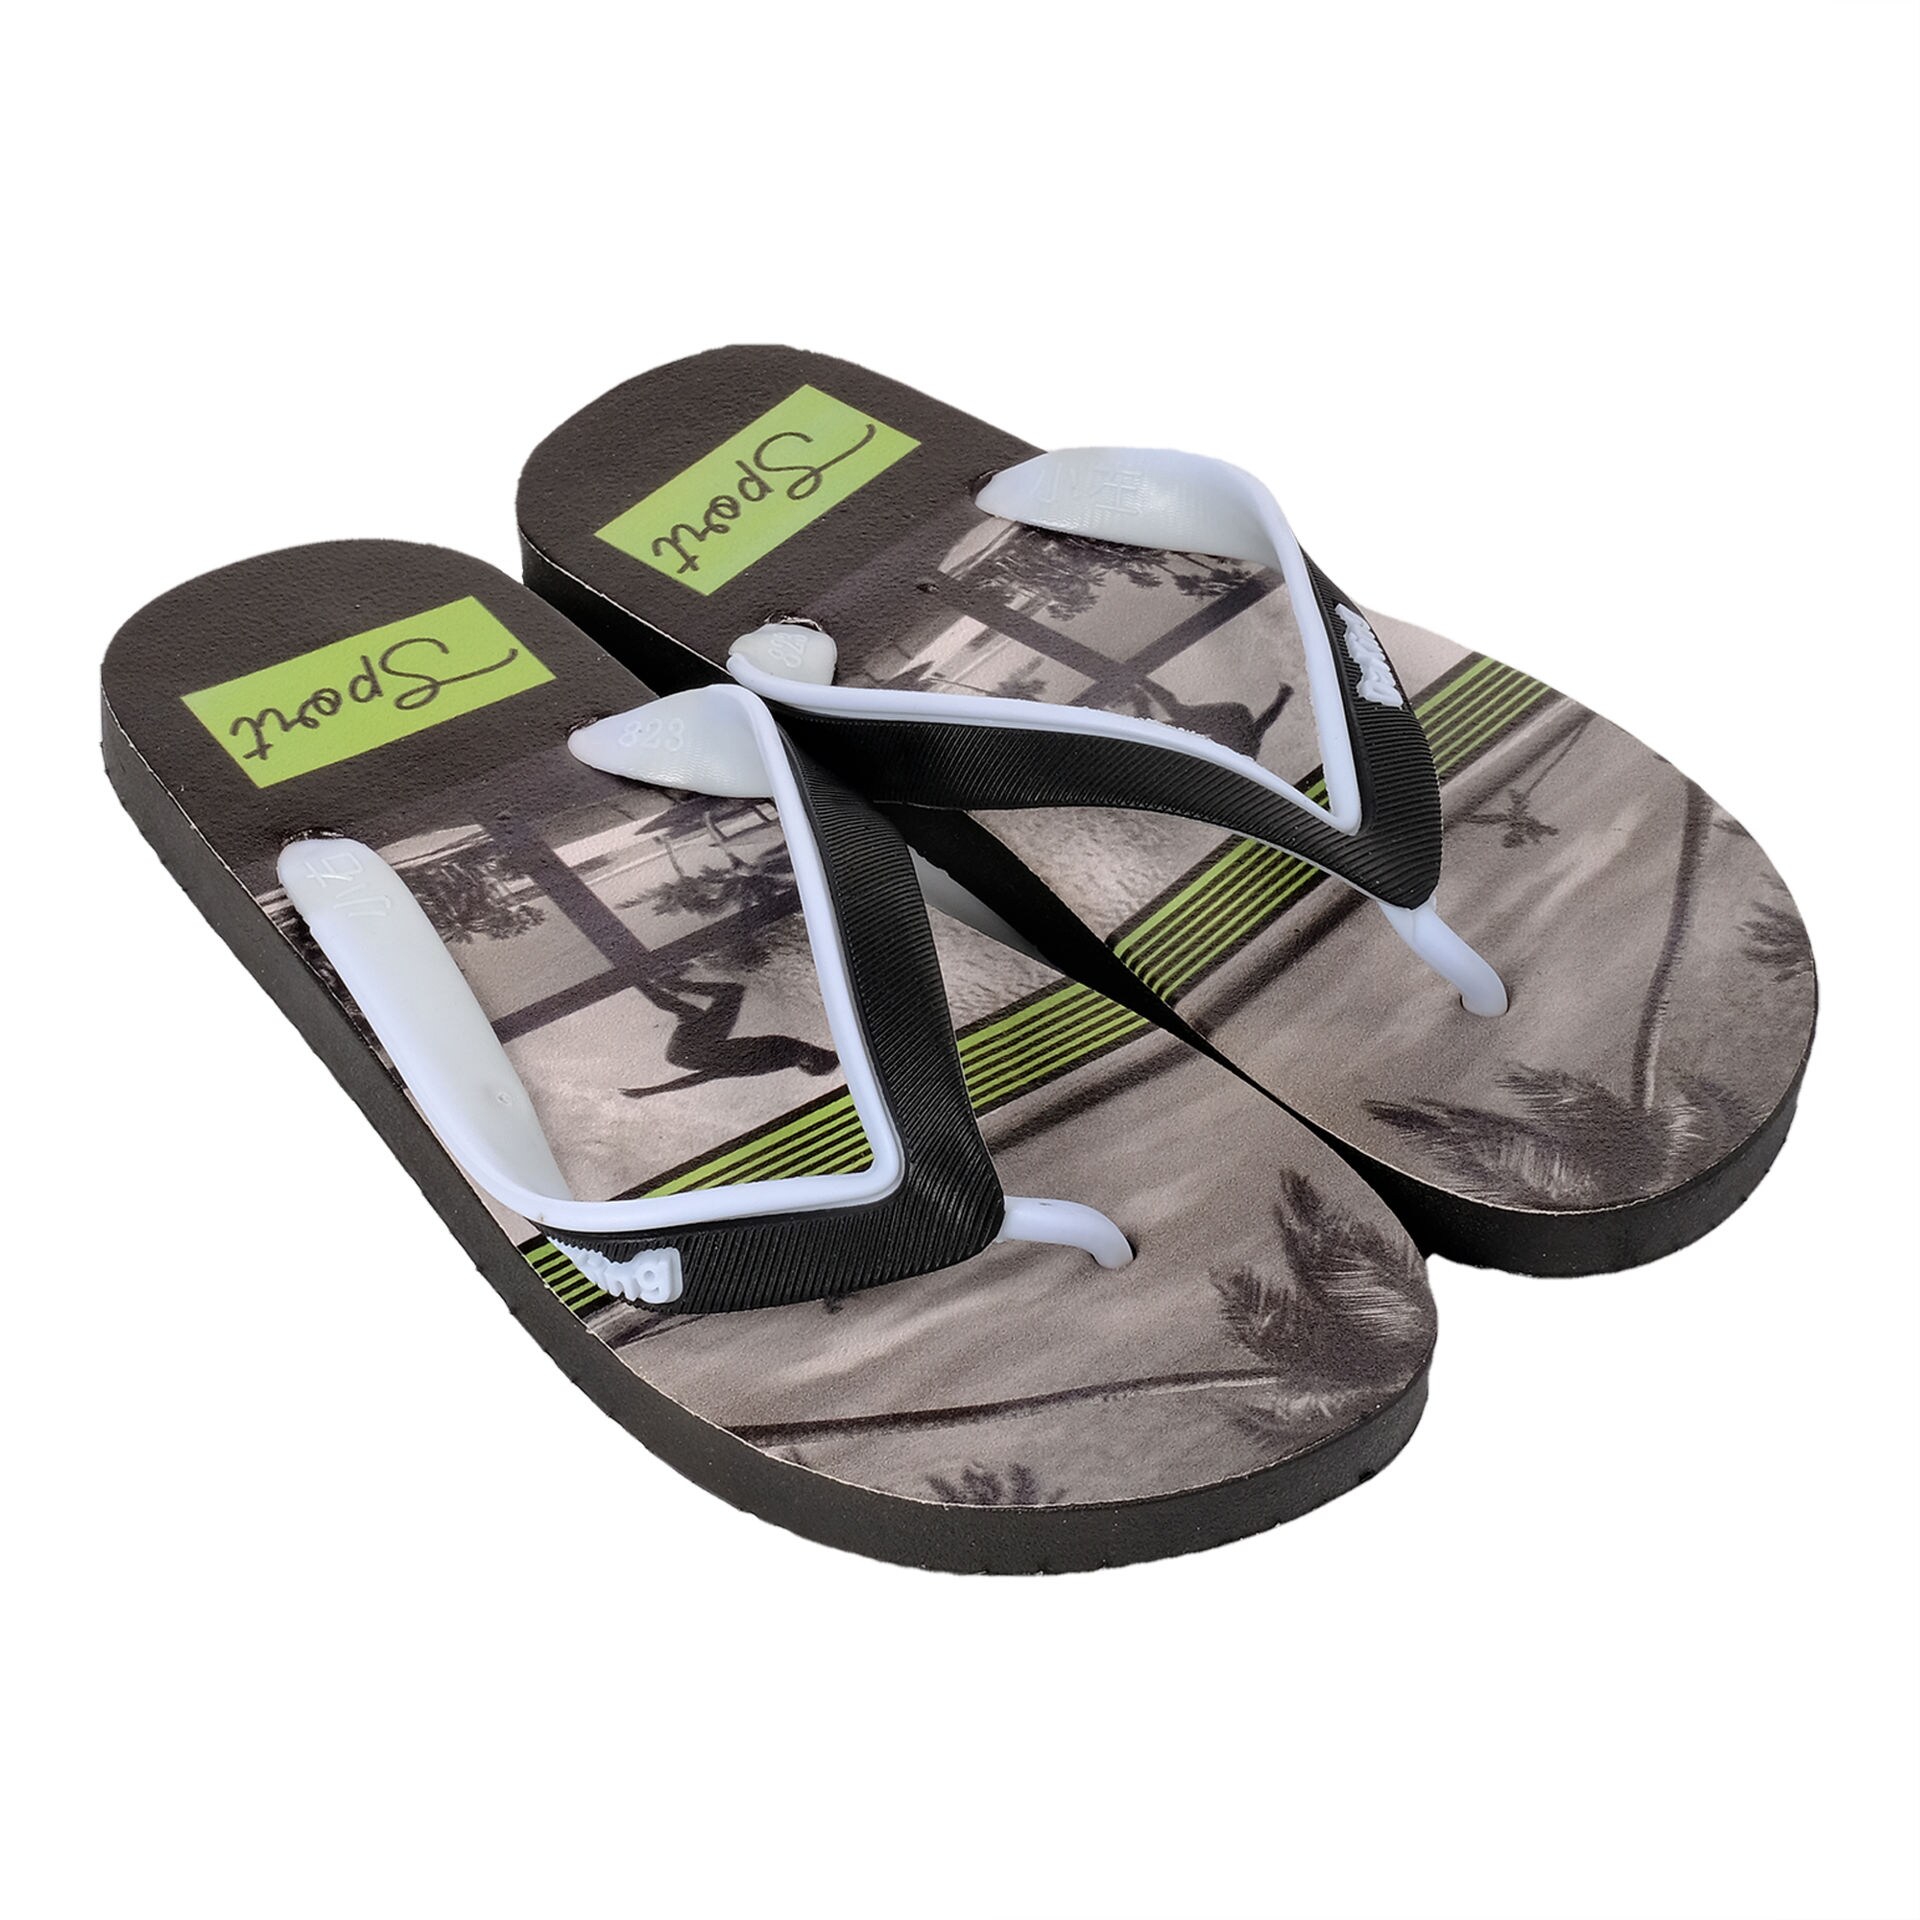 PVC Slide Slippers For Men - Black and White - SF 014